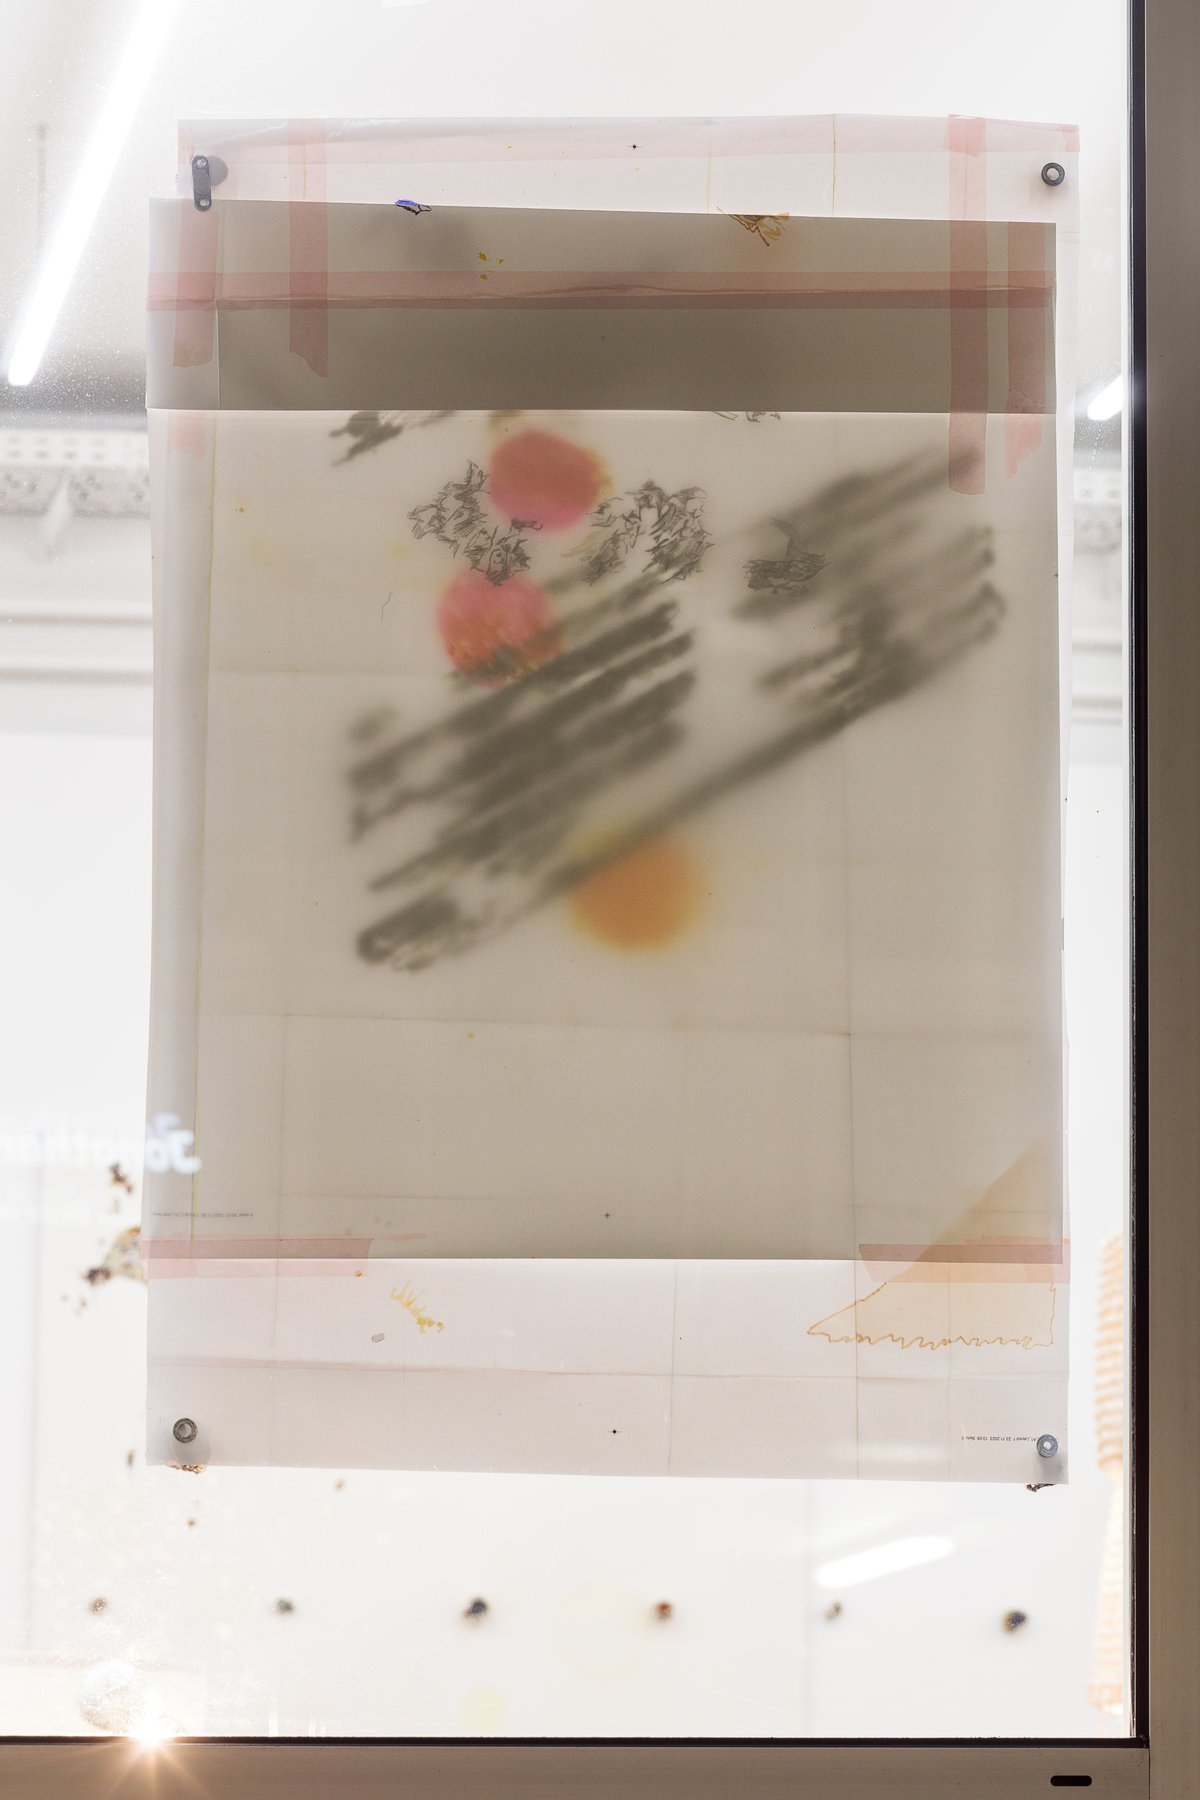 Josef StrauLightlines auf Posterrückseite 3, 2023Poster, stone magnets, tape90,5 x 62,5 x 3 cm